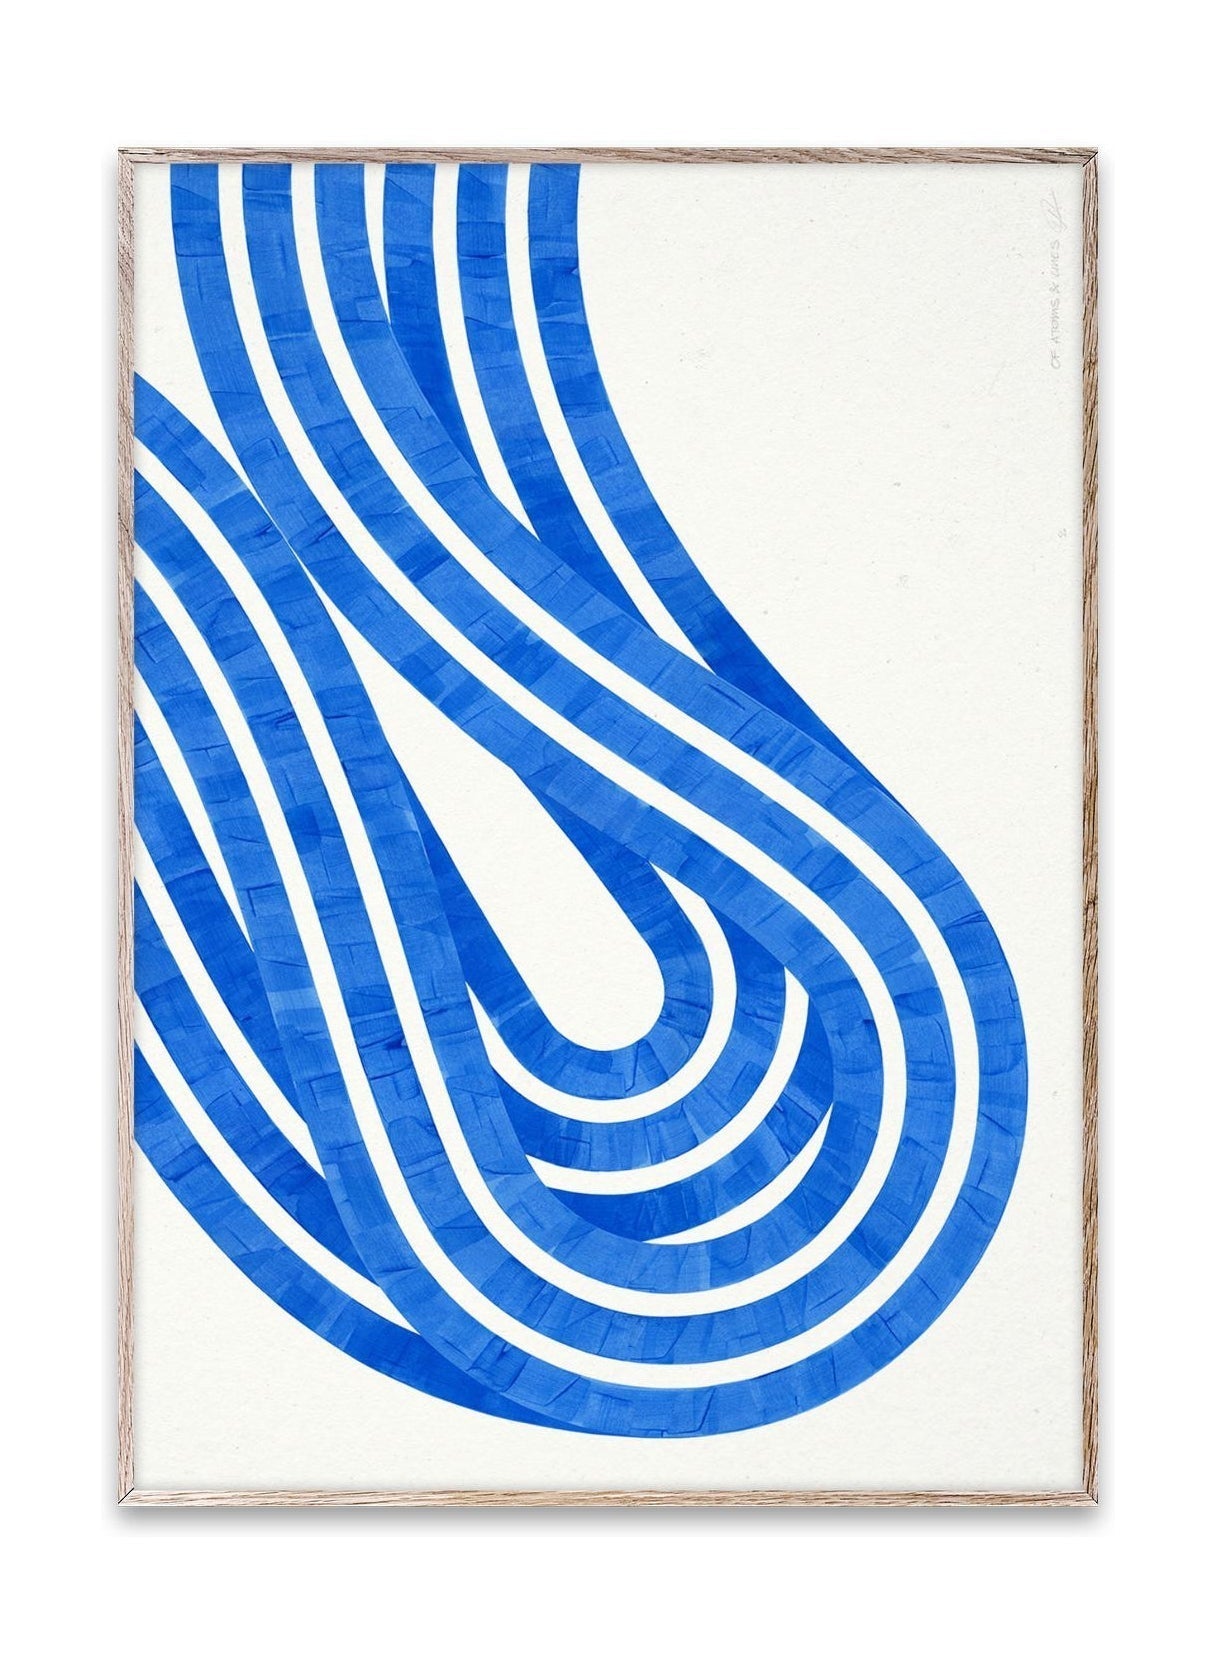 Papirkollektiv entropi blå 02 plakat, 50x70 cm